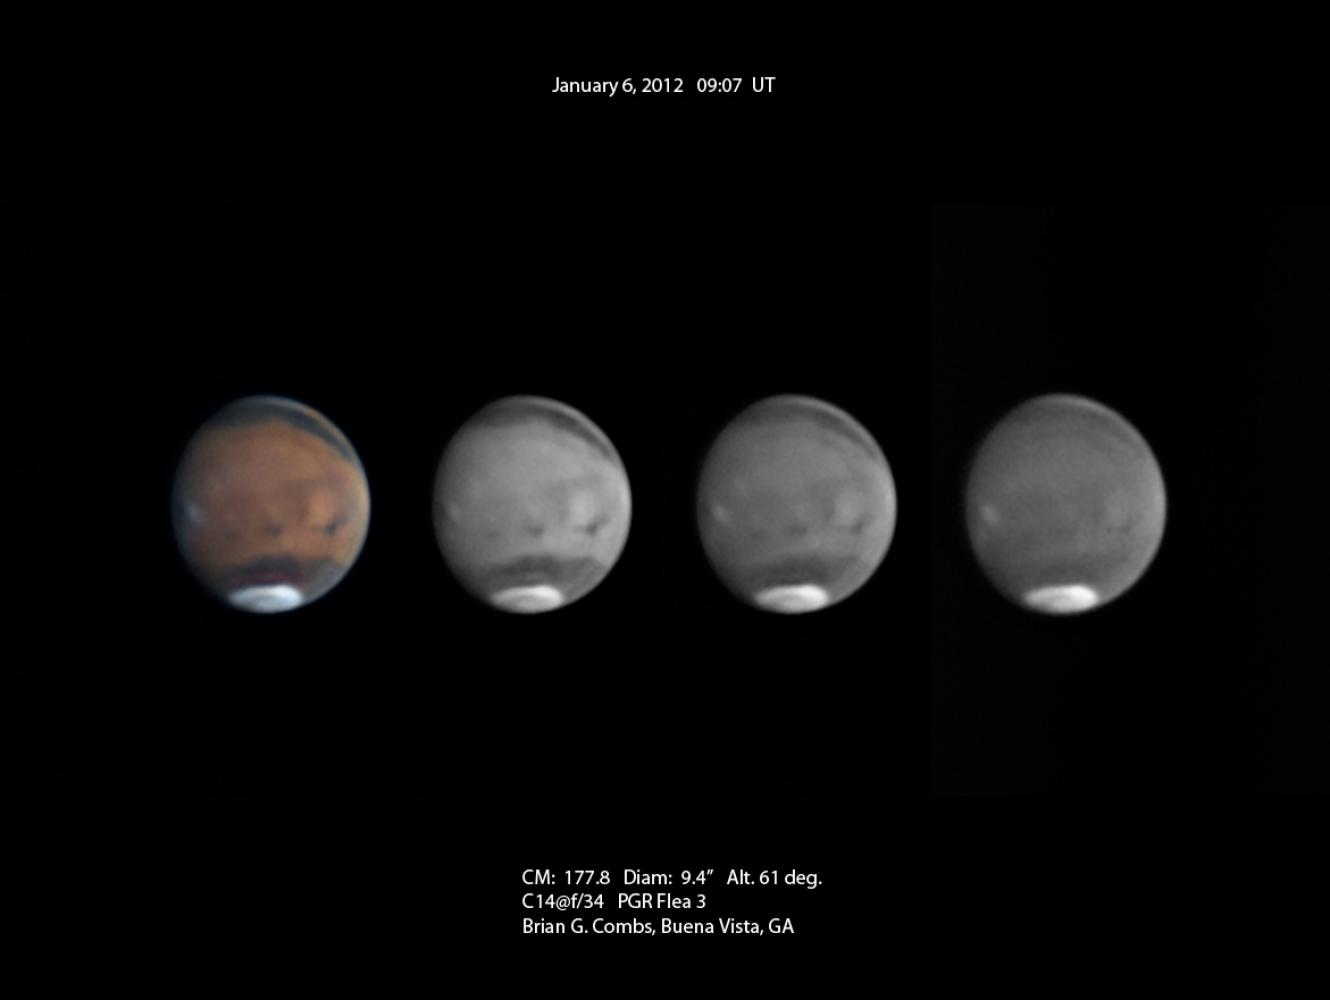 Mars - January 6, 2012